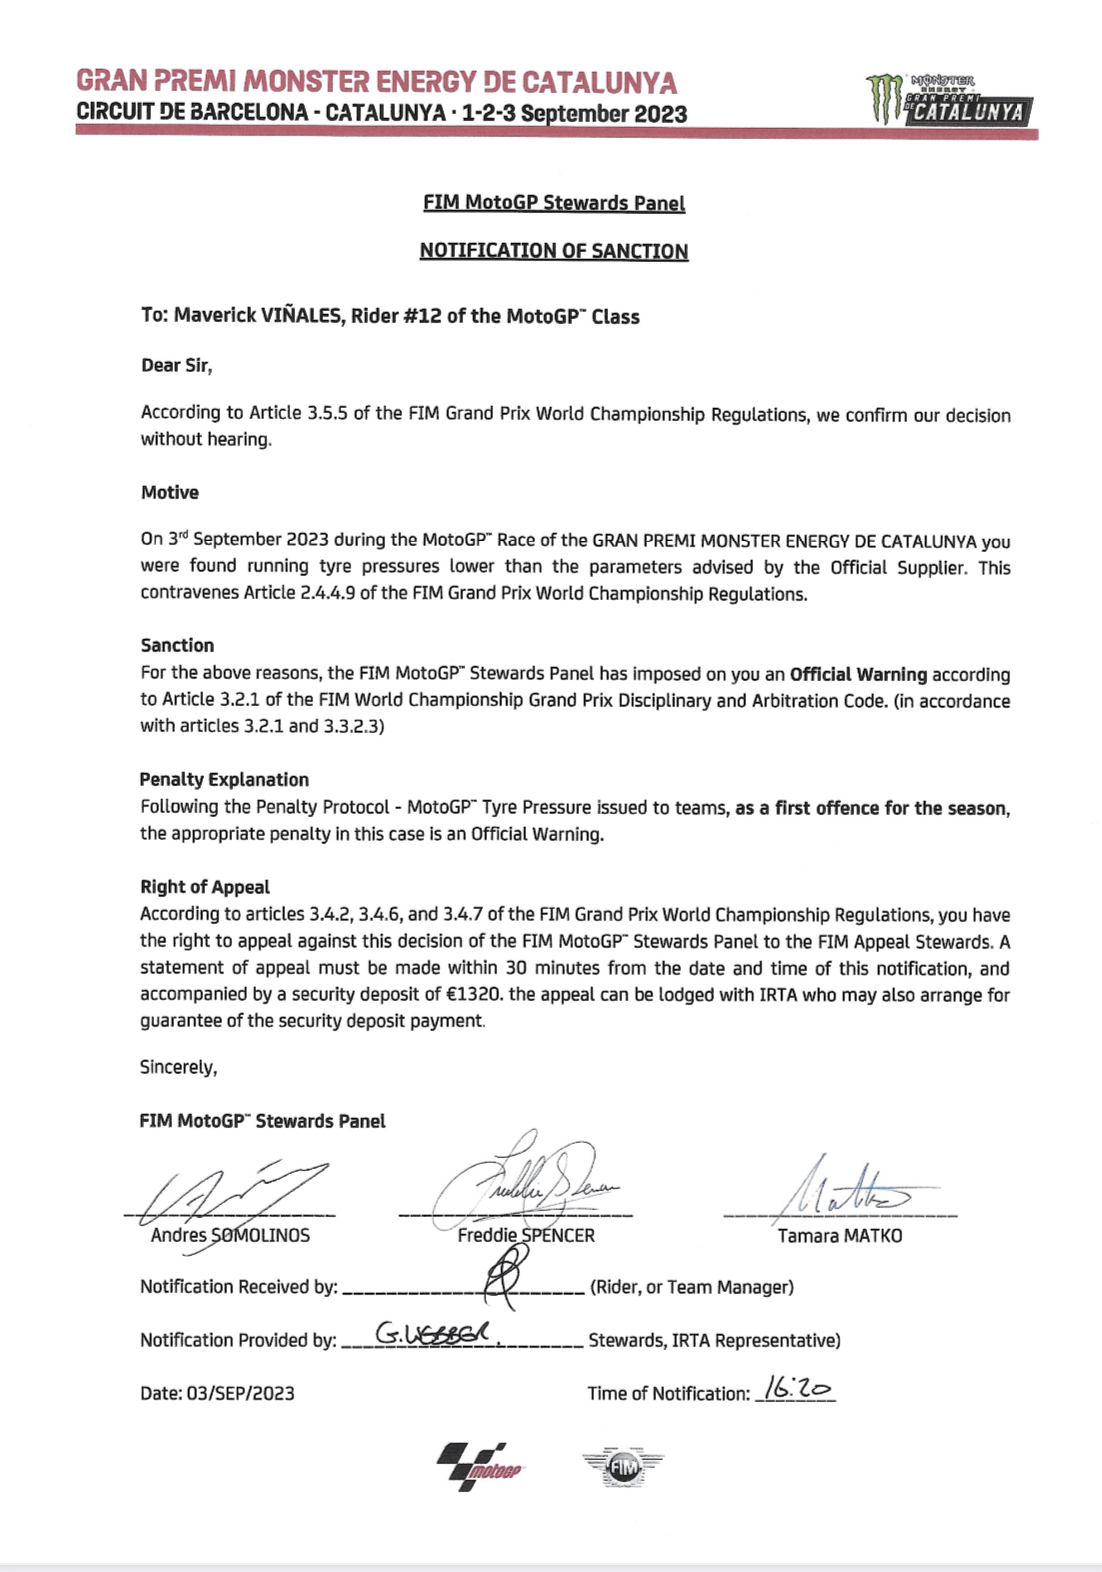 Первое официальное предупреждение MotoGP о нарушении регламента в плане давления в шинах